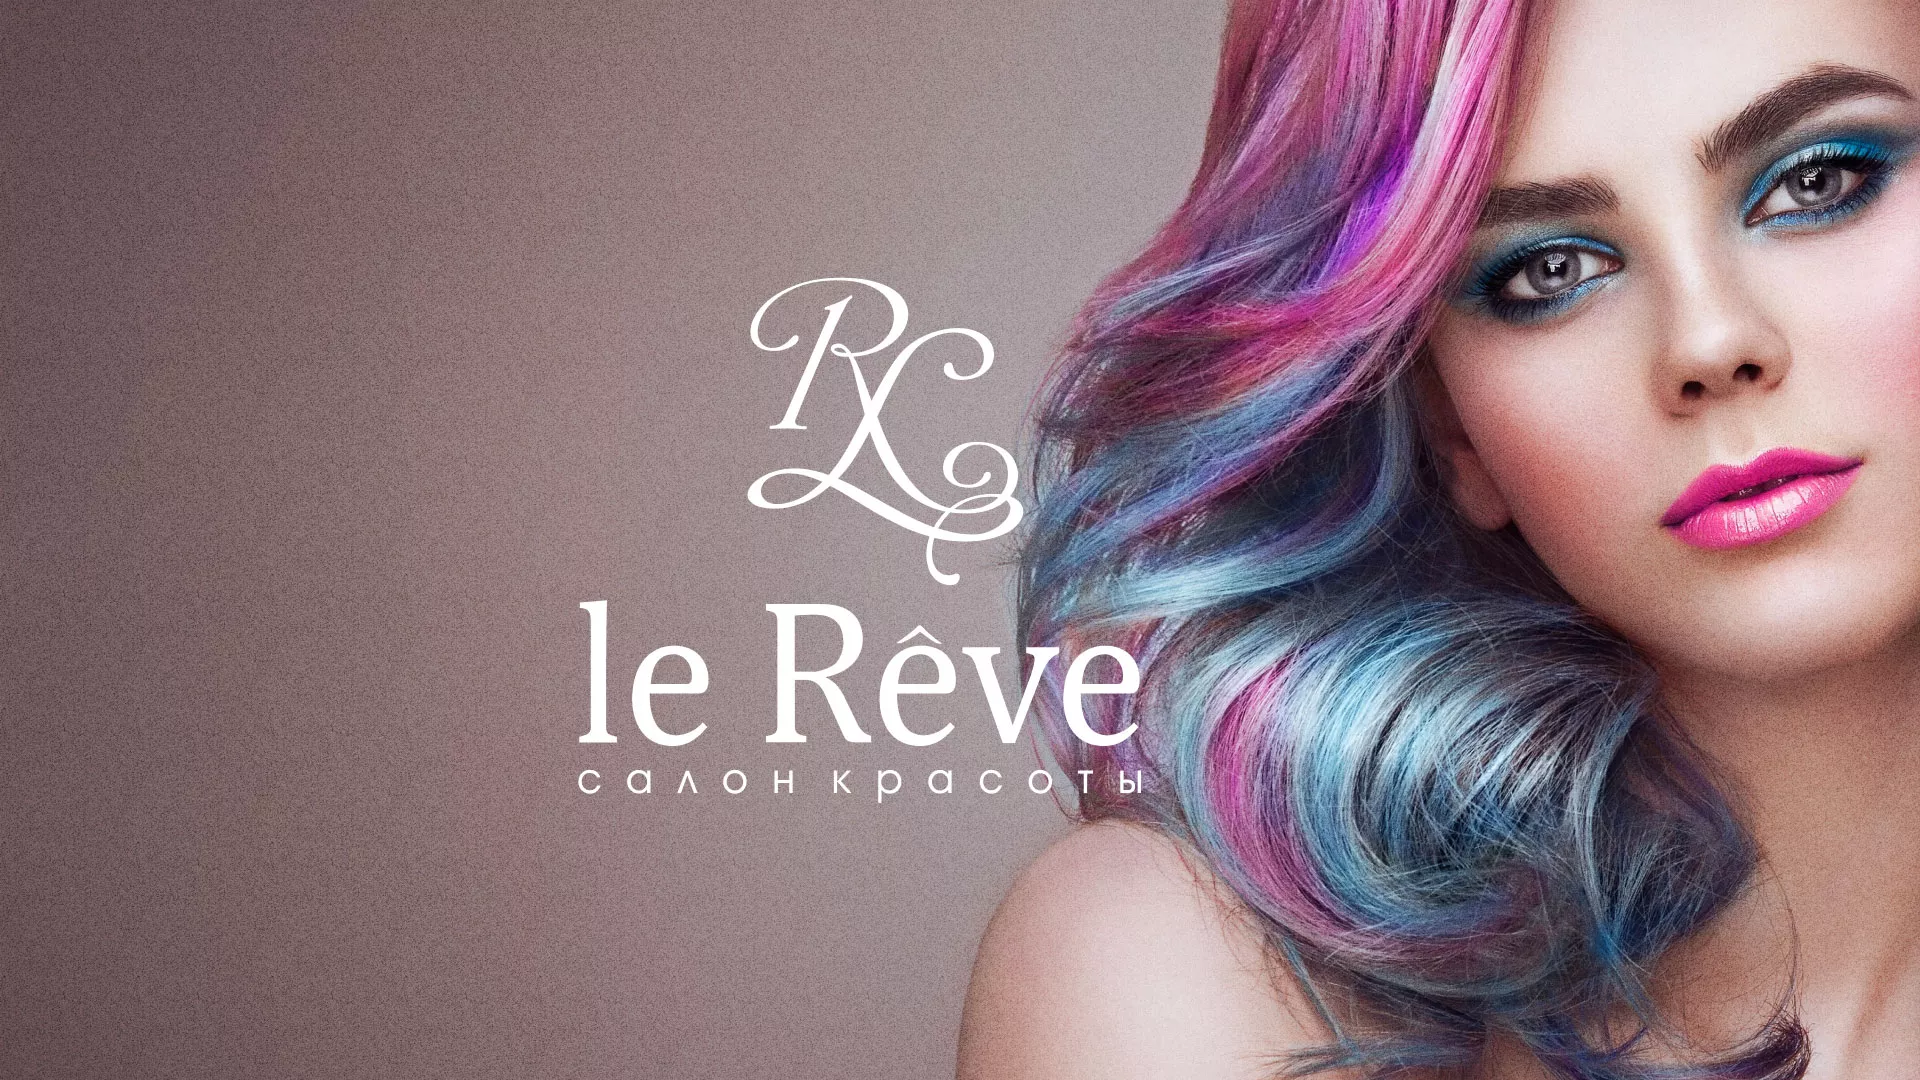 Создание сайта для салона красоты «Le Reve» в Славске